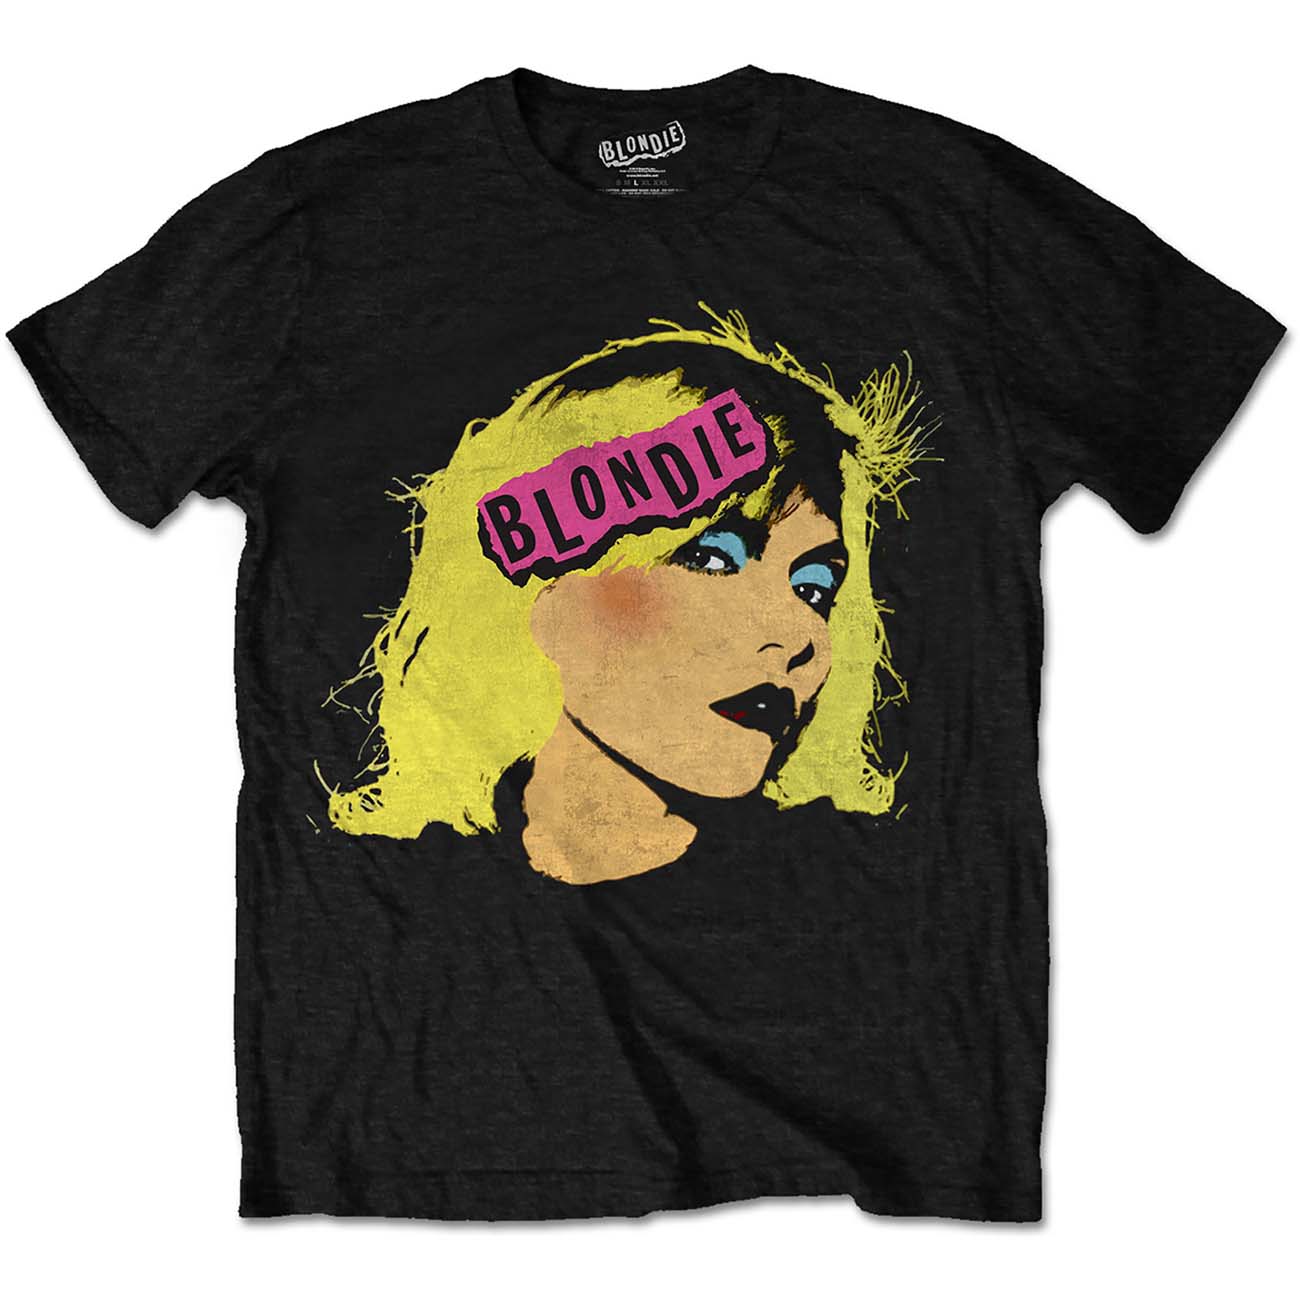 blondie_unisex_t-shirt:_punk_logo